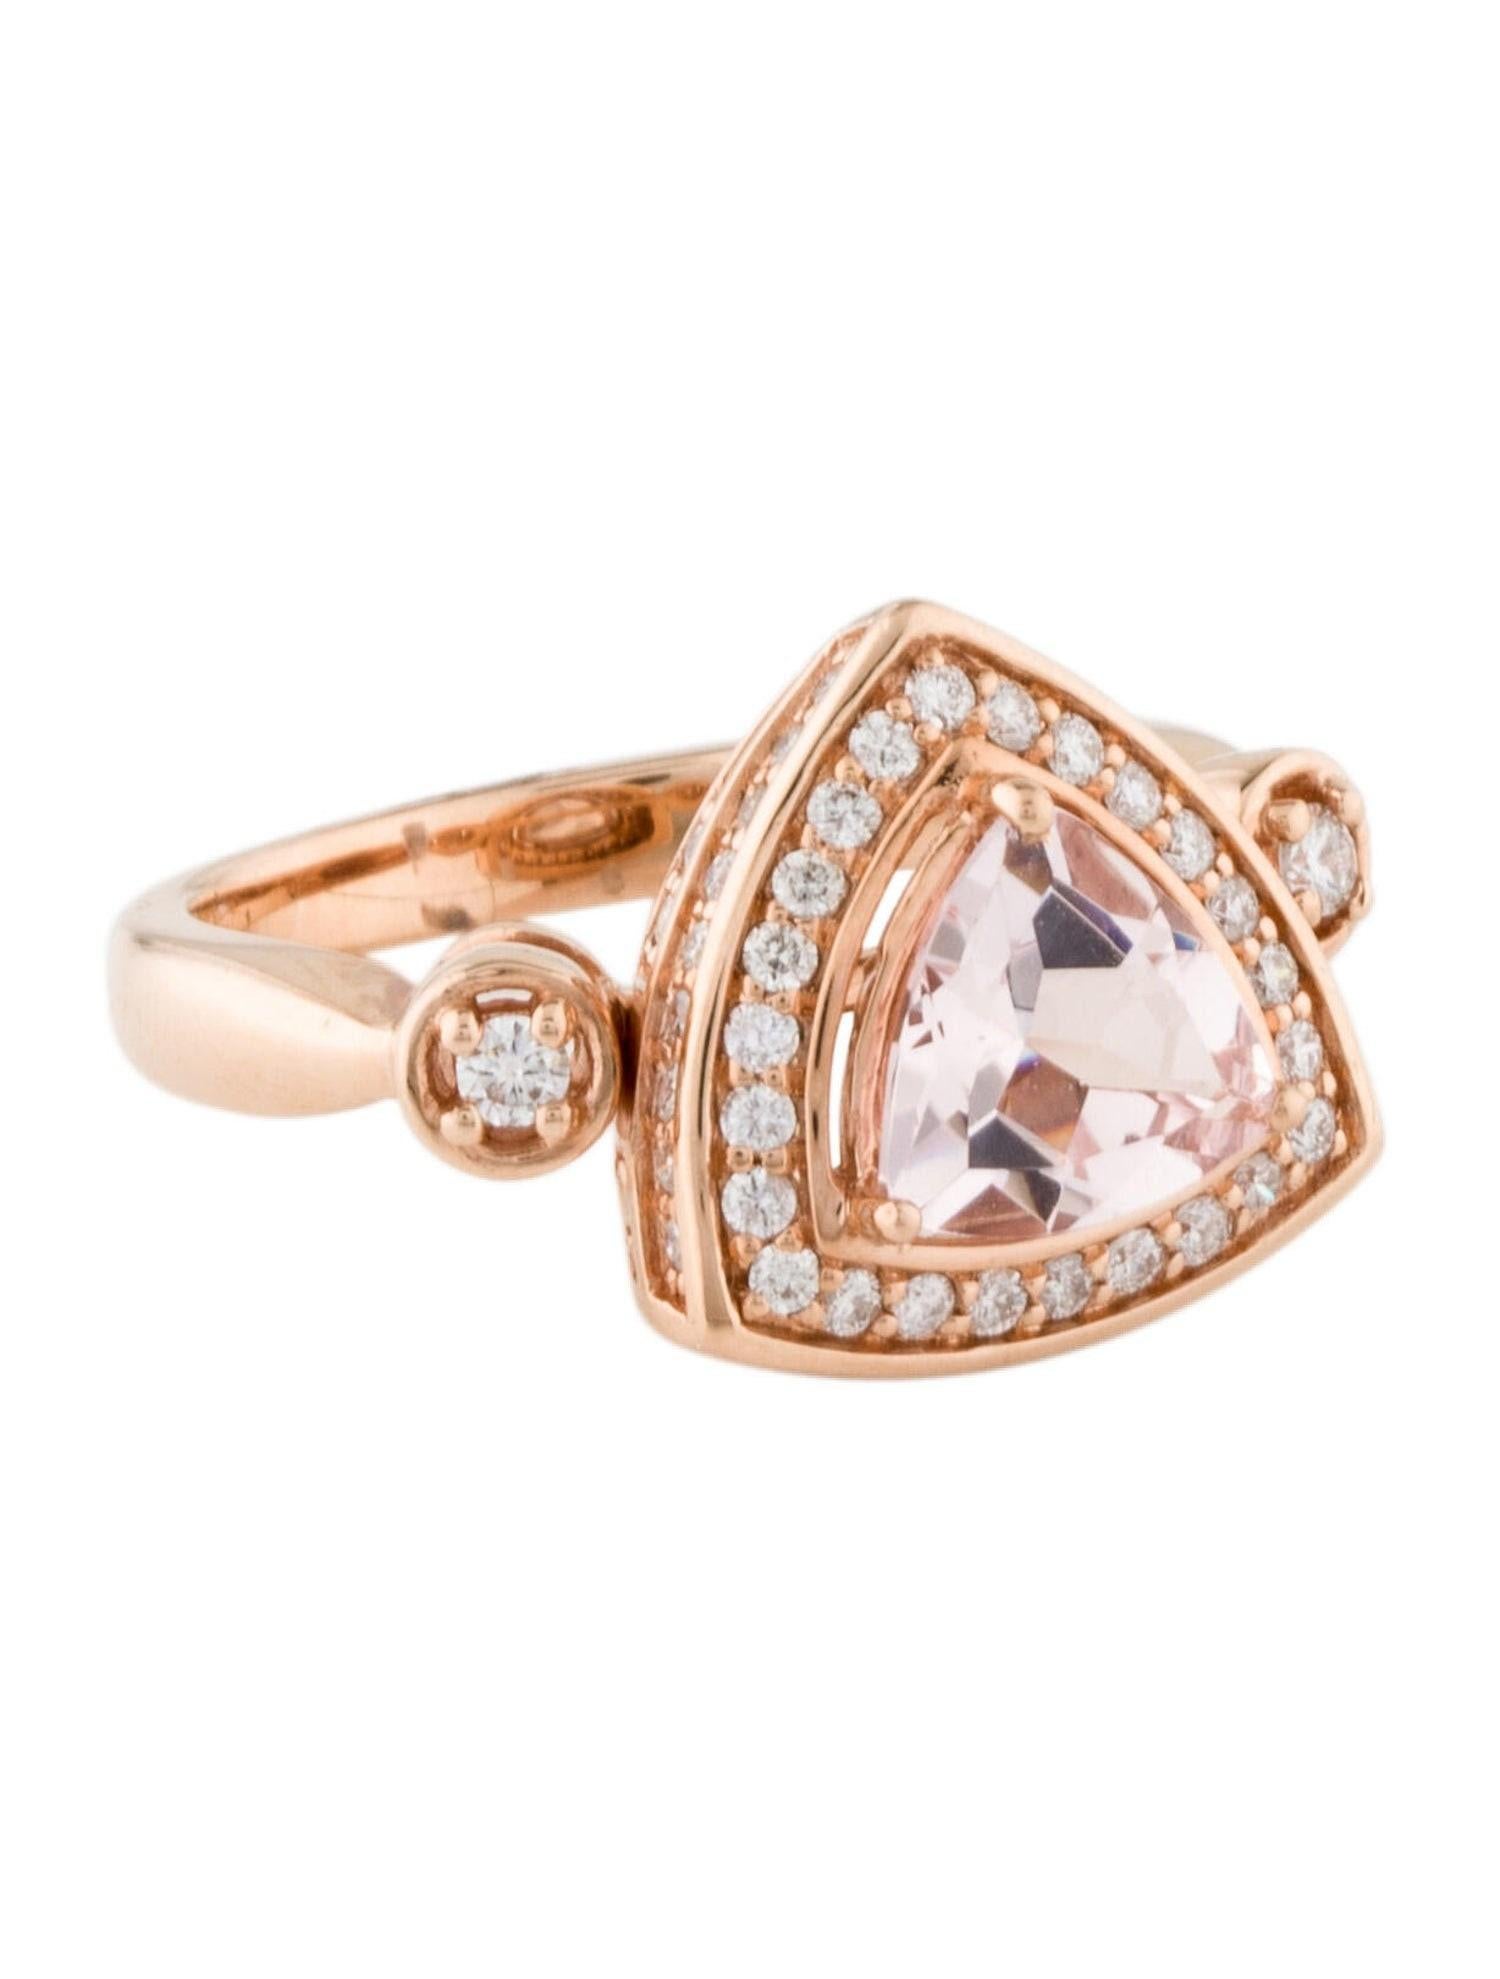 Dies ist eine wunderschöne natürliche Morganit und Diamant Halo Vintage Ring in massivem 14K Roségold gesetzt. Der natürliche Morganit im Billionenschliff von 1,29 Karat hat eine ausgezeichnete pfirsichrosa Farbe und ist von einem Kranz weißer